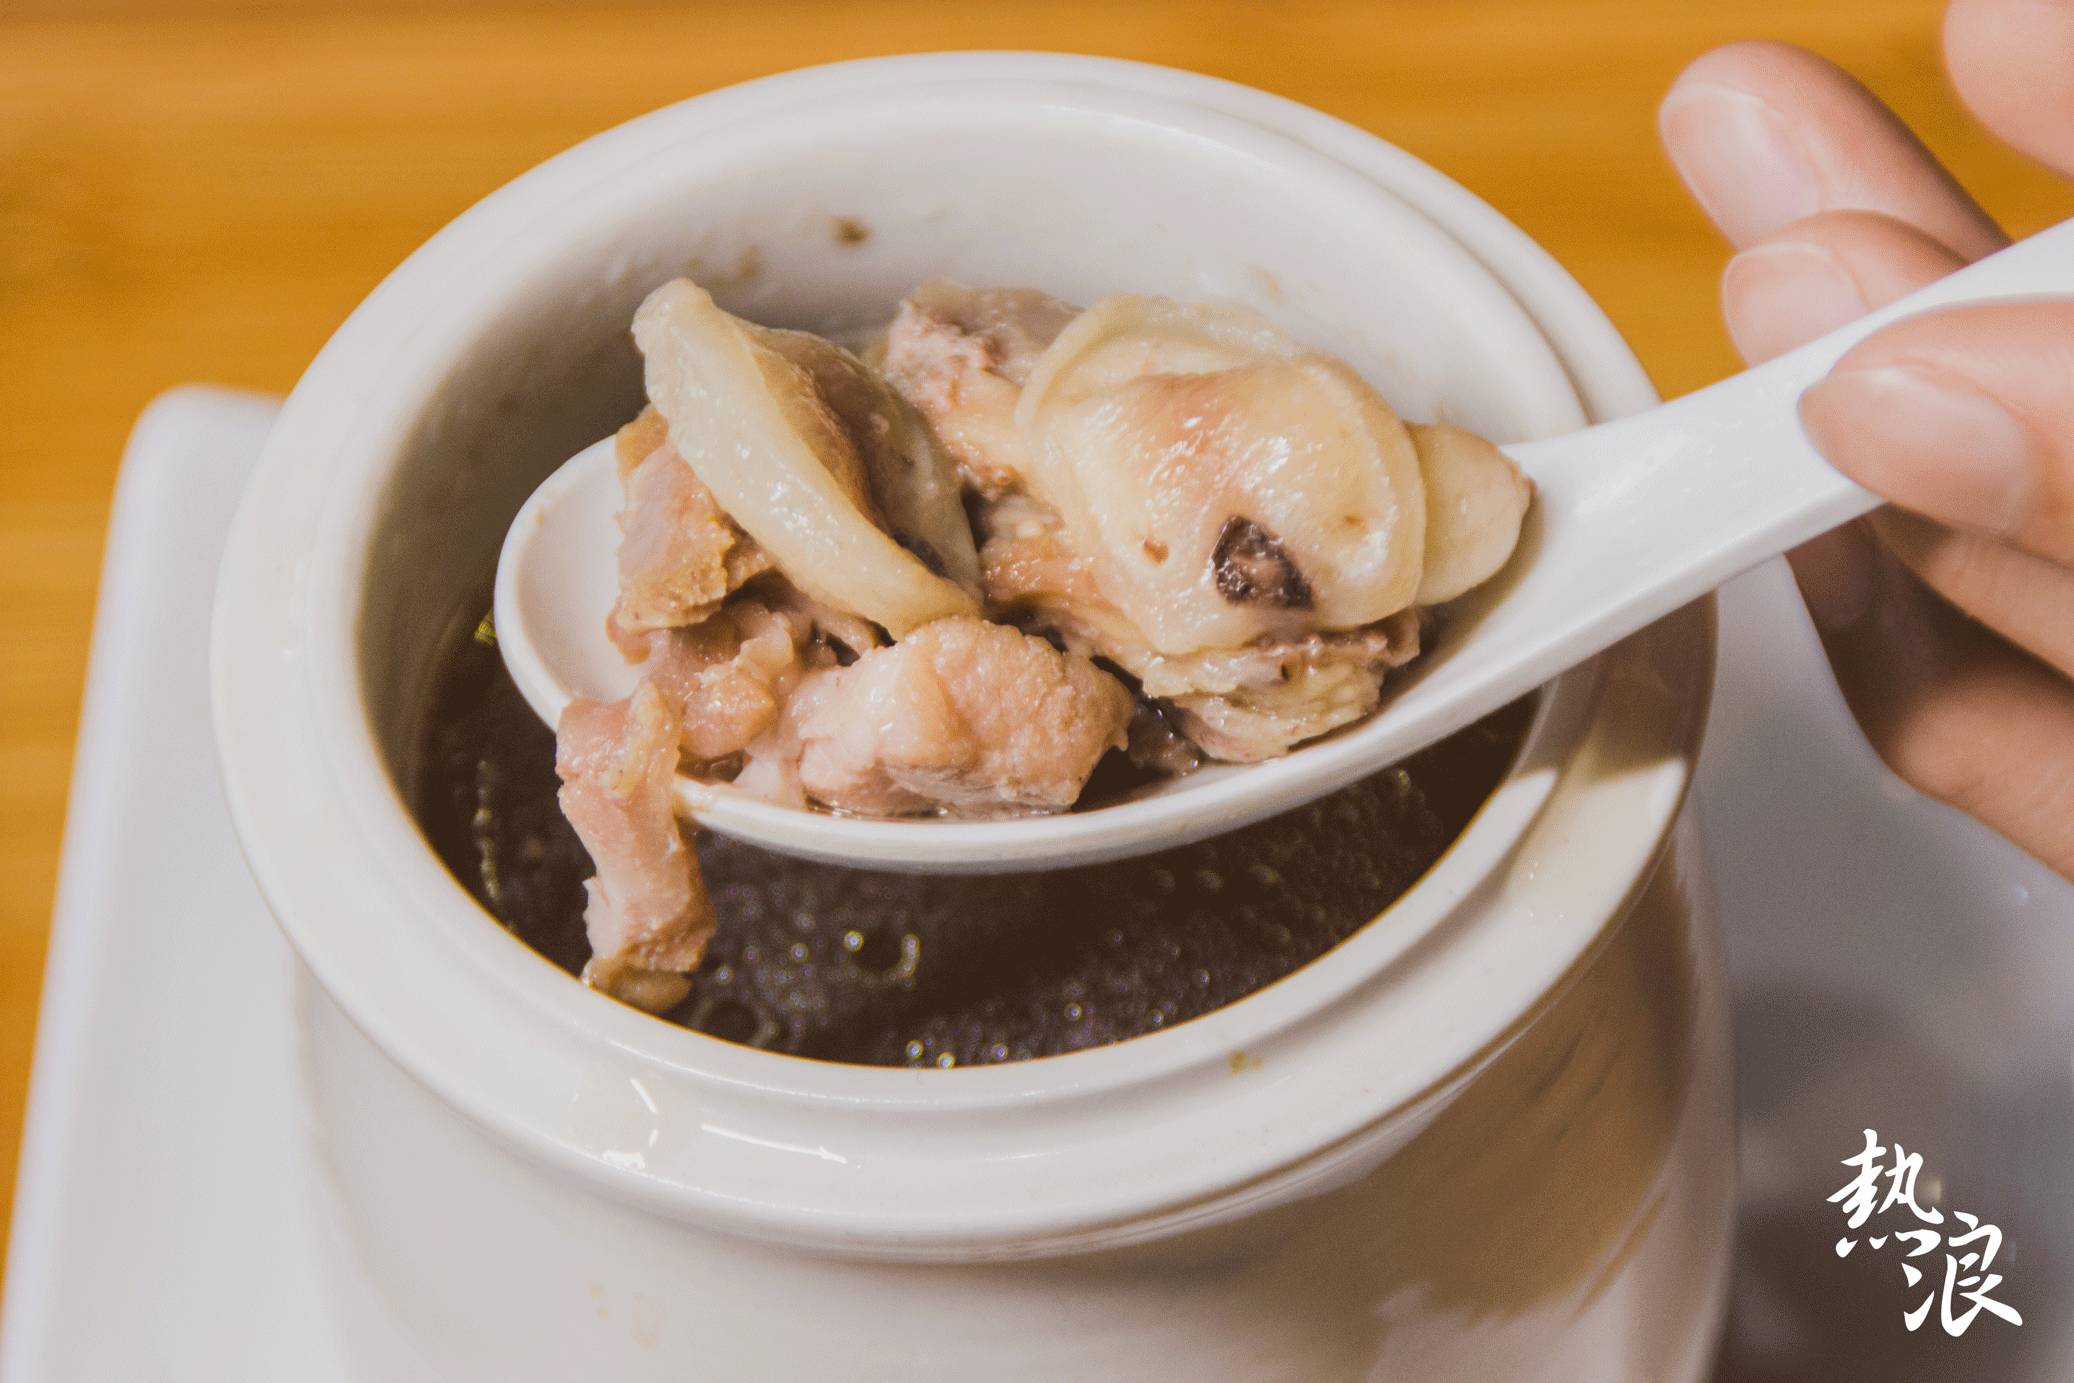 三代传承的潮汕牛肉粿条汤,15元就能在虎门这店吃到!